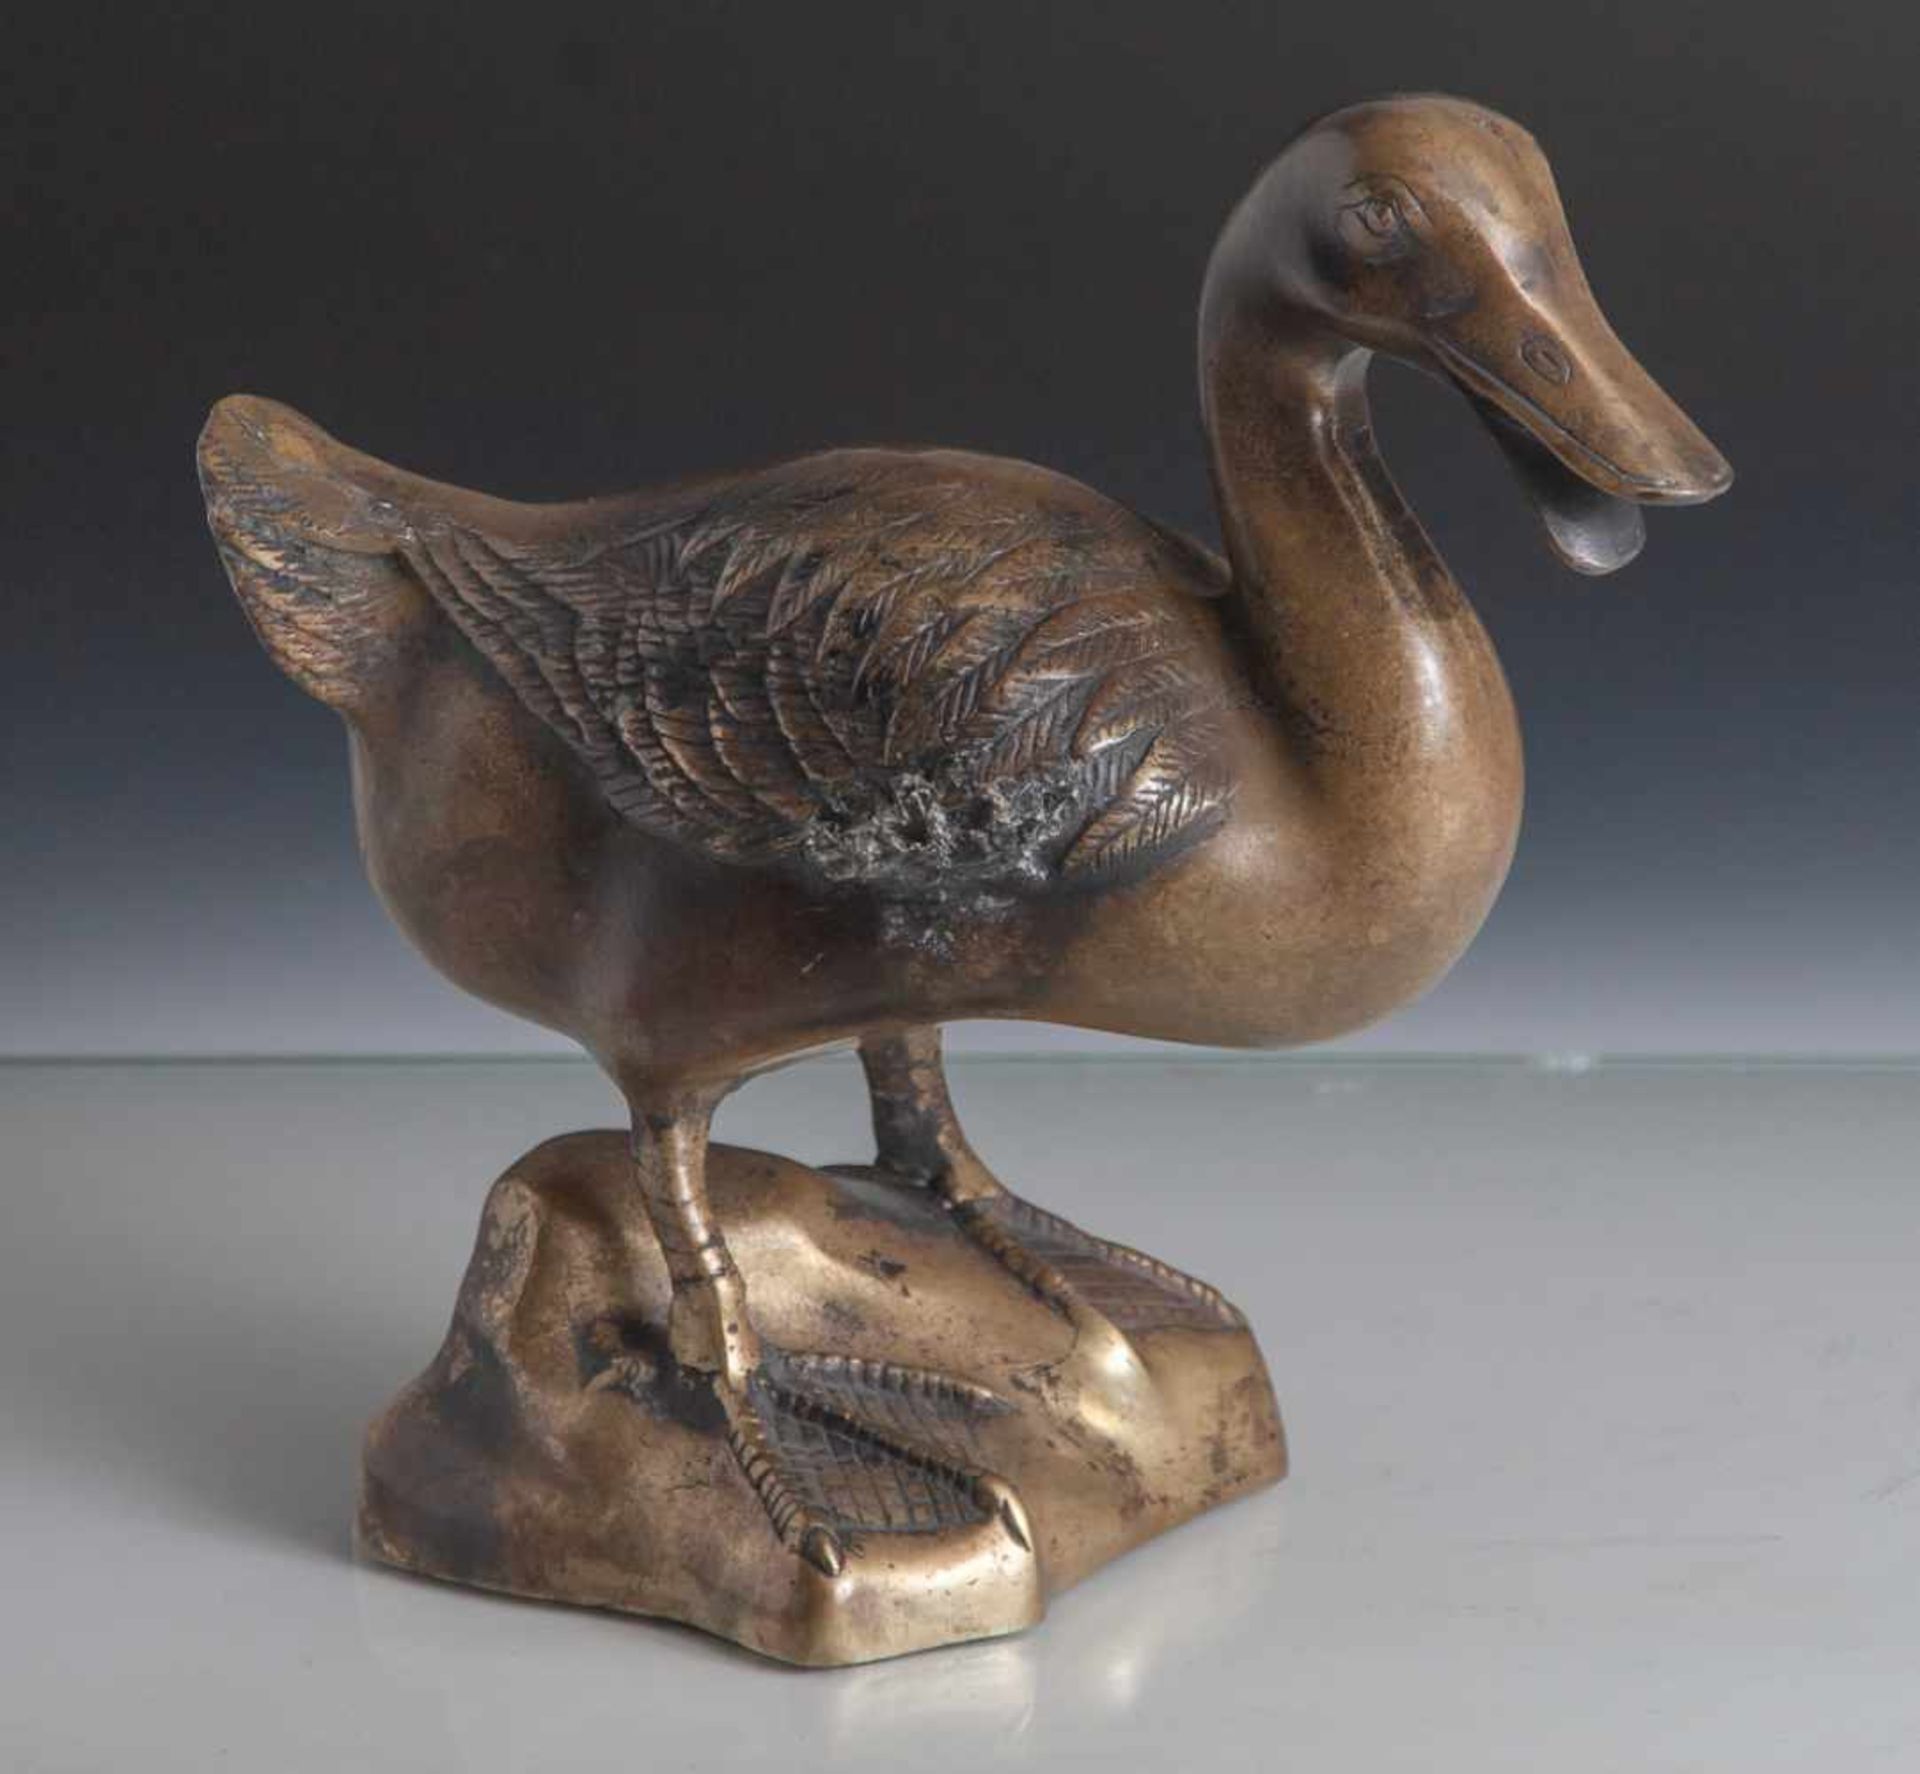 Bronzeplastik, wohl um 1900, Darst. einer Ente auf naturalistisch gearb. Sockel stehen,wohl um 1900,